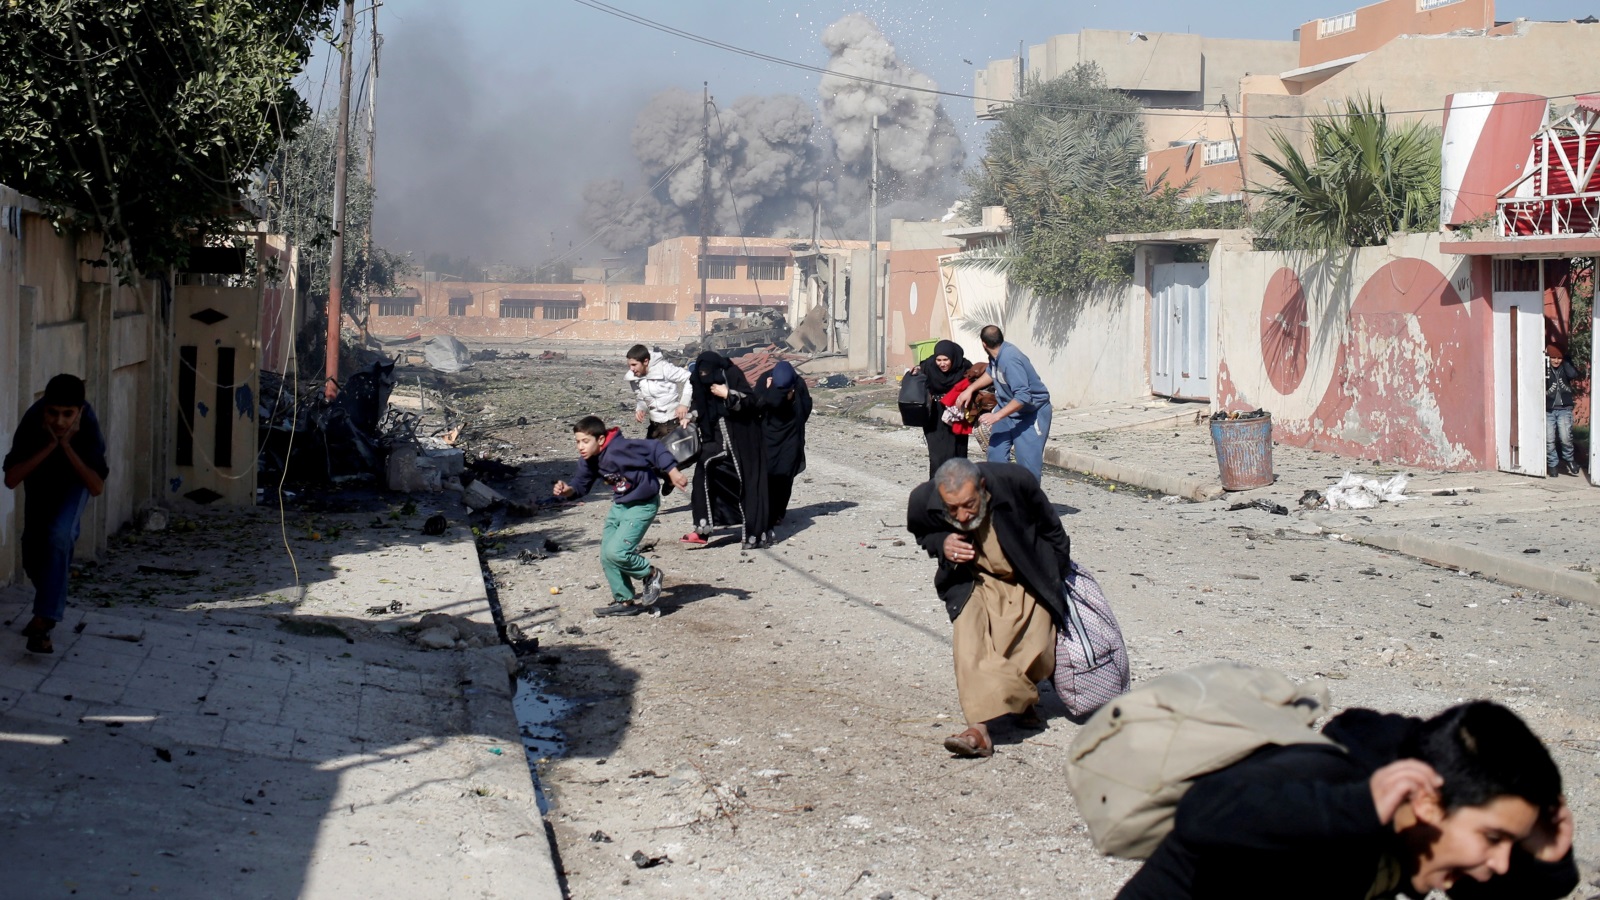 ‪عراقيون في حالة هلع بعد قصف جوي للتحالف على مواقع لتنظيم الدولة في حي التحرير بالموصل أواخر 2016‬  (رويترز)